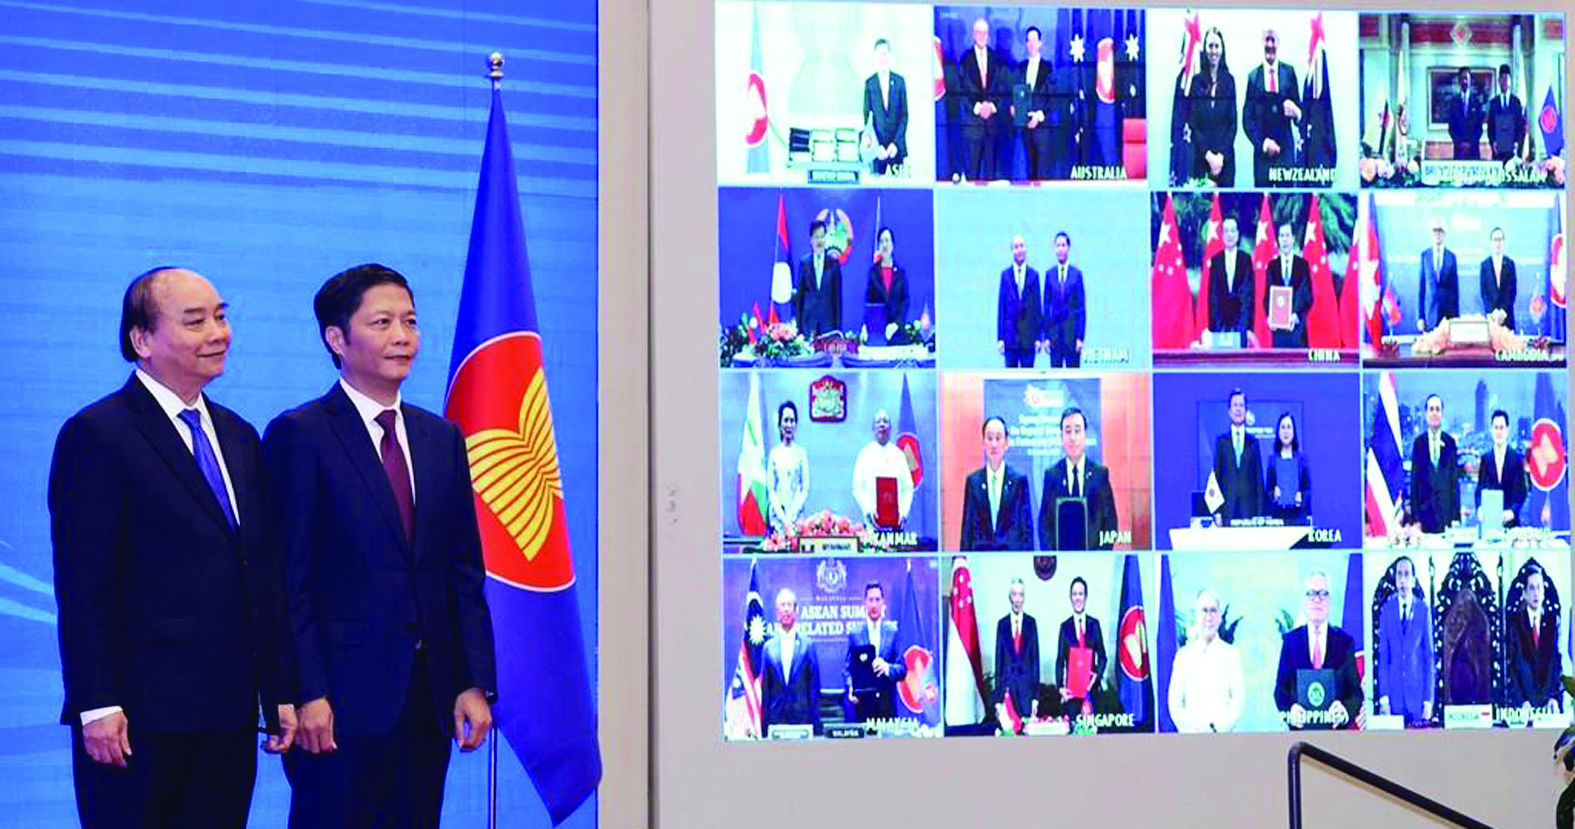  Thủ tướng Nguyễn Xuân Phúc - Chủ tịch ASEAN 2020, Bộ Trưởng Bộ Công thương Trần Tuấn cùng đại diện các quốc gia tại Lễ ký Hiệp định Đối tác Kinh tế Toàn diện Khu vực (RCEP) theo hình thức trực tuyến ngày 15/11/2020. Ảnh: TTXVN